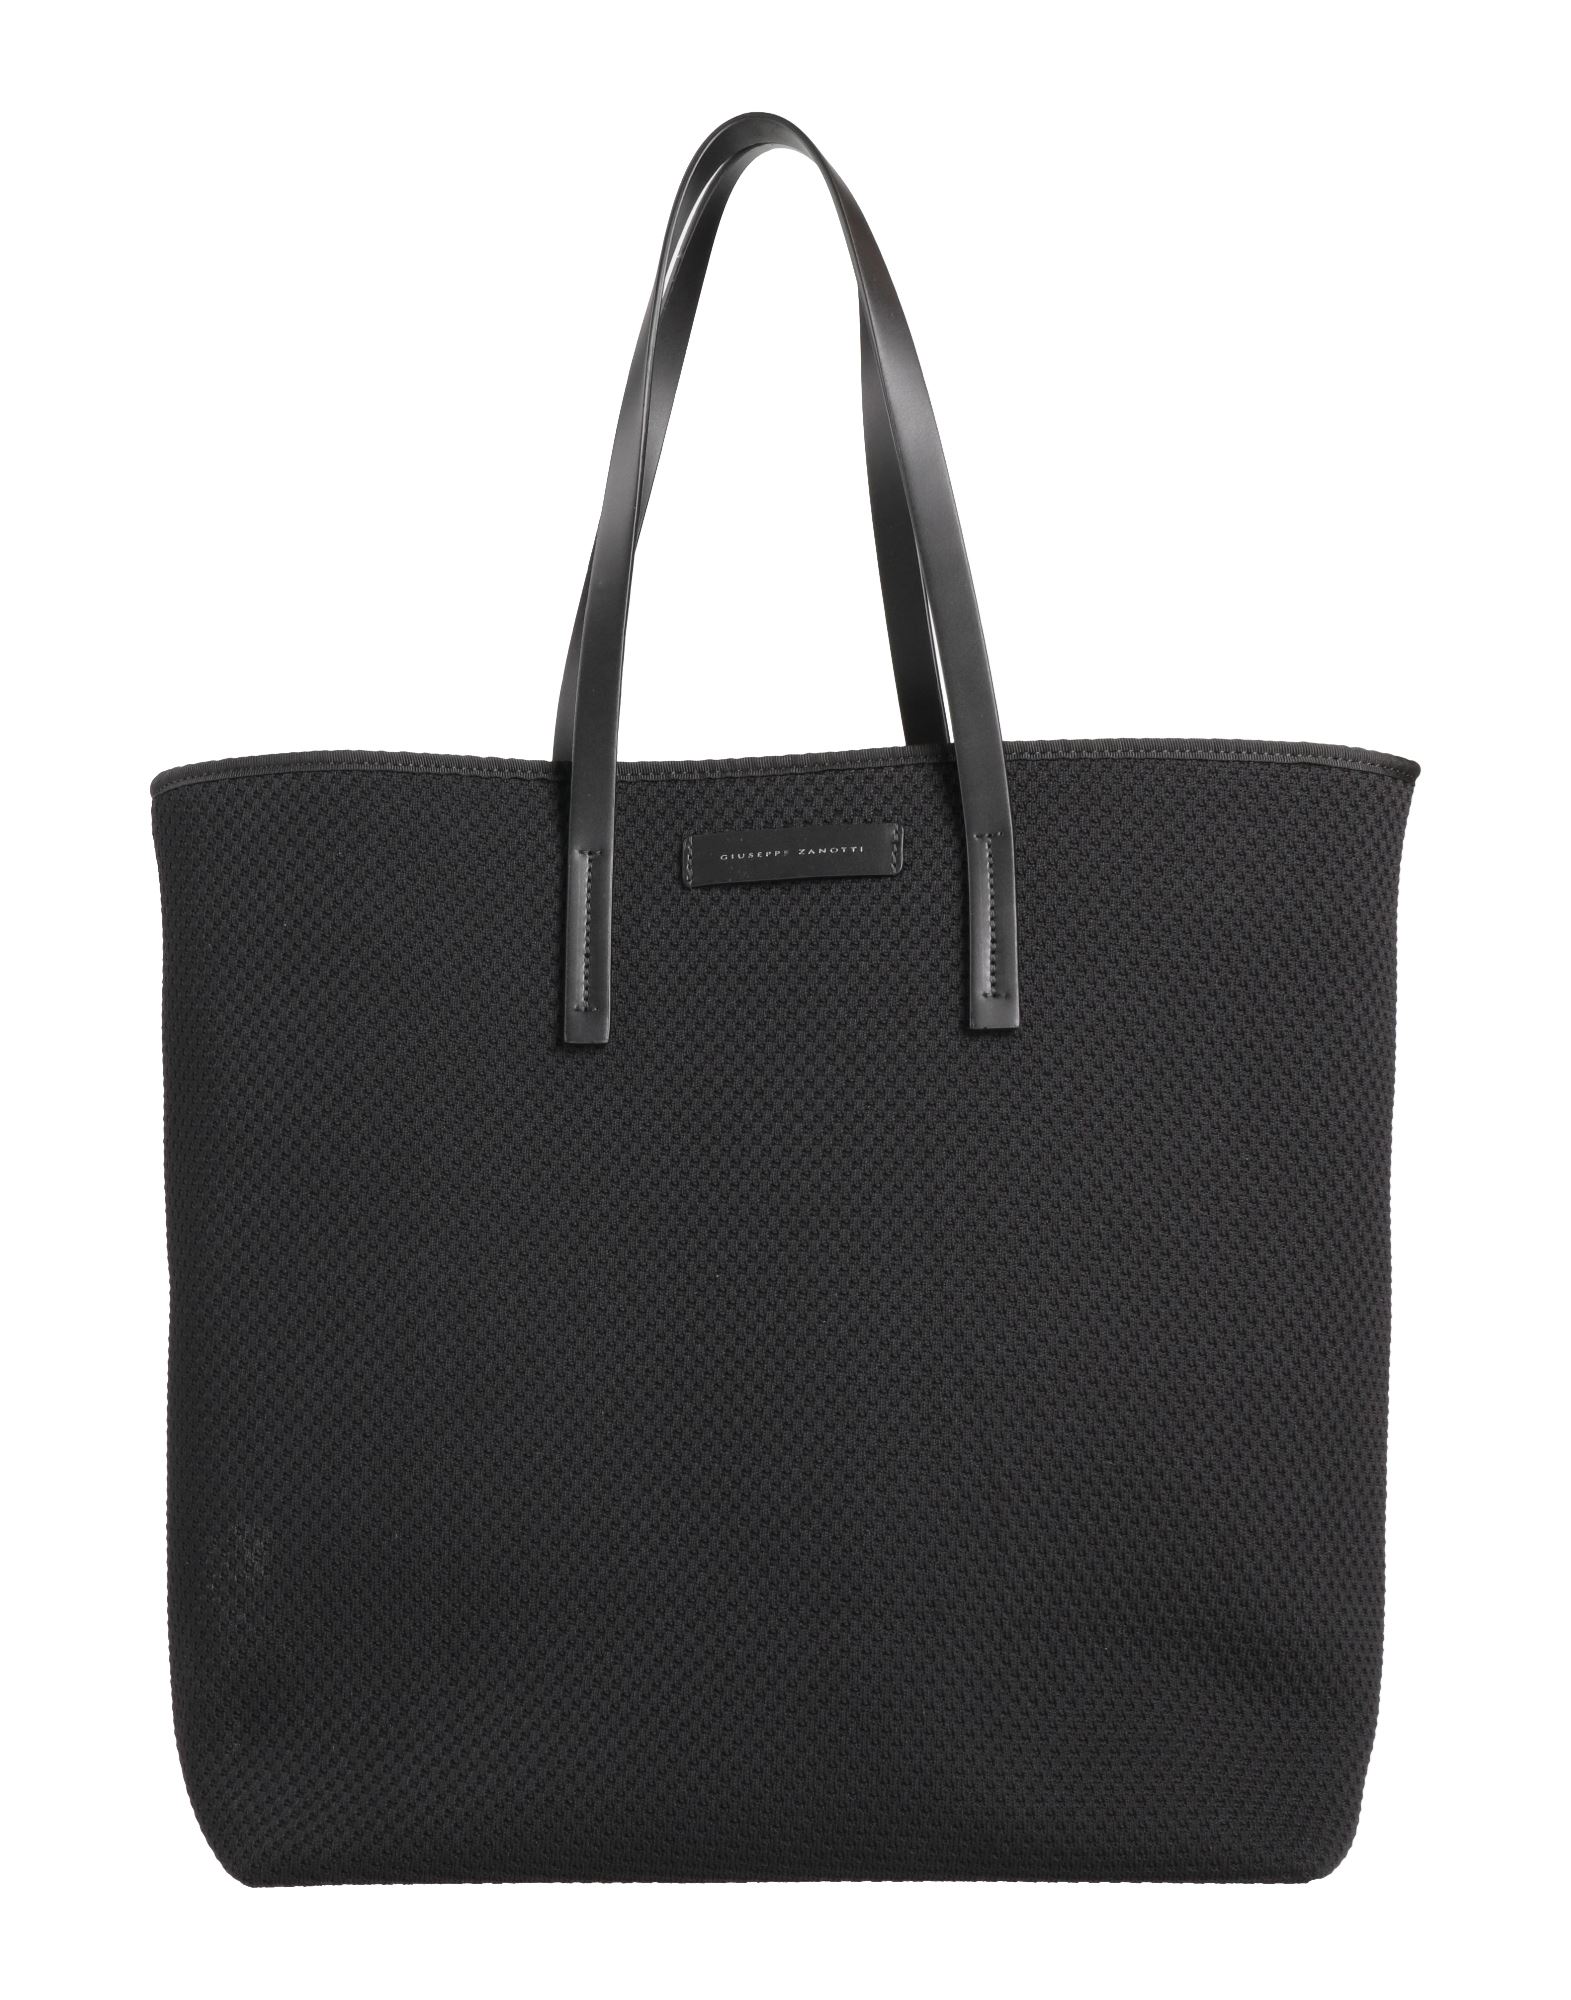 Giuseppe Zanotti Handbags In Black